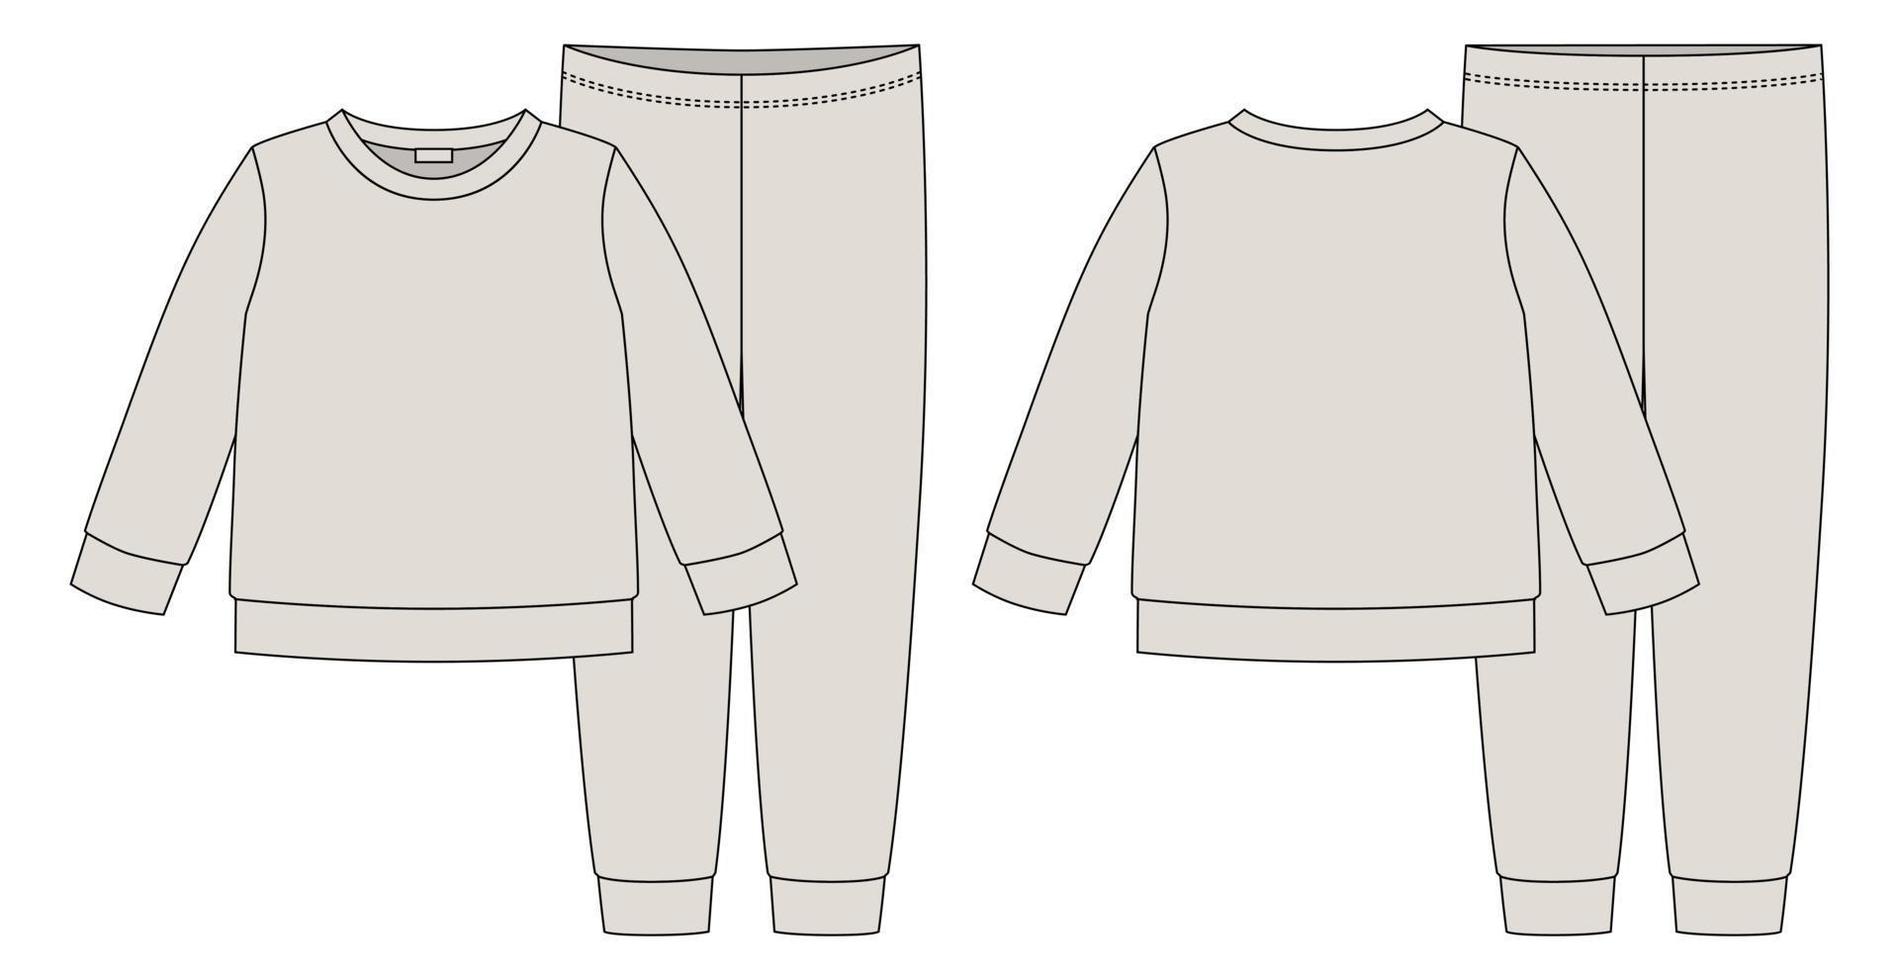 croqui técnico de pijama de vestuário. cor cinza. moletom e calça infantil de algodão. as crianças descrevem o modelo de design de roupa de dormir. vetor